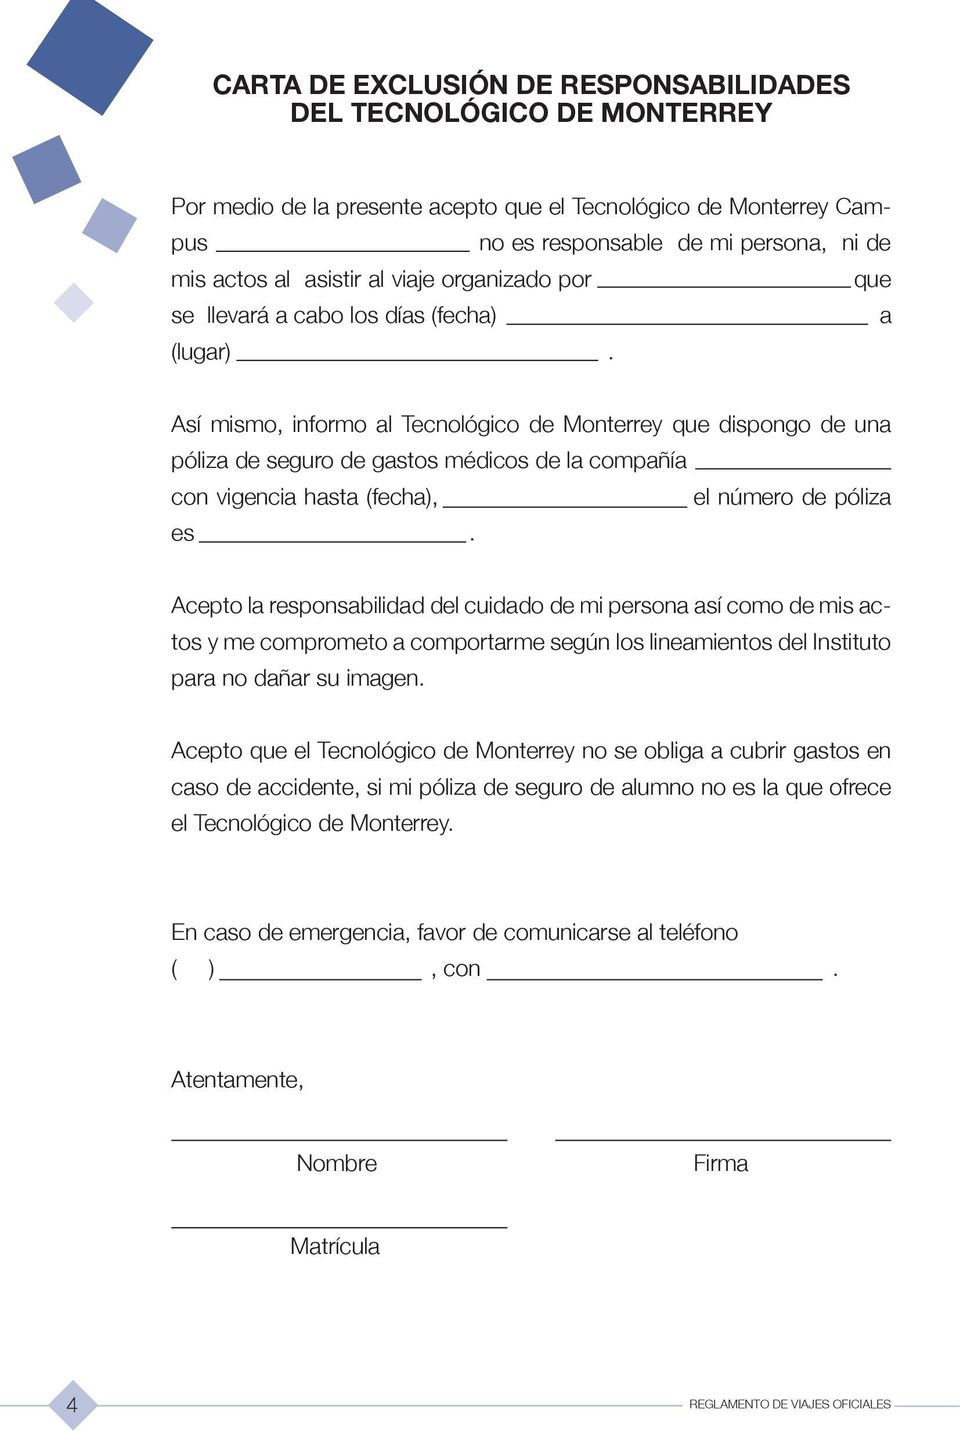 Así mismo, informo al Tecnológico de Monterrey que dispongo de una póliza de seguro de gastos médicos de la compañía con vigencia hasta (fecha), el número de póliza es.